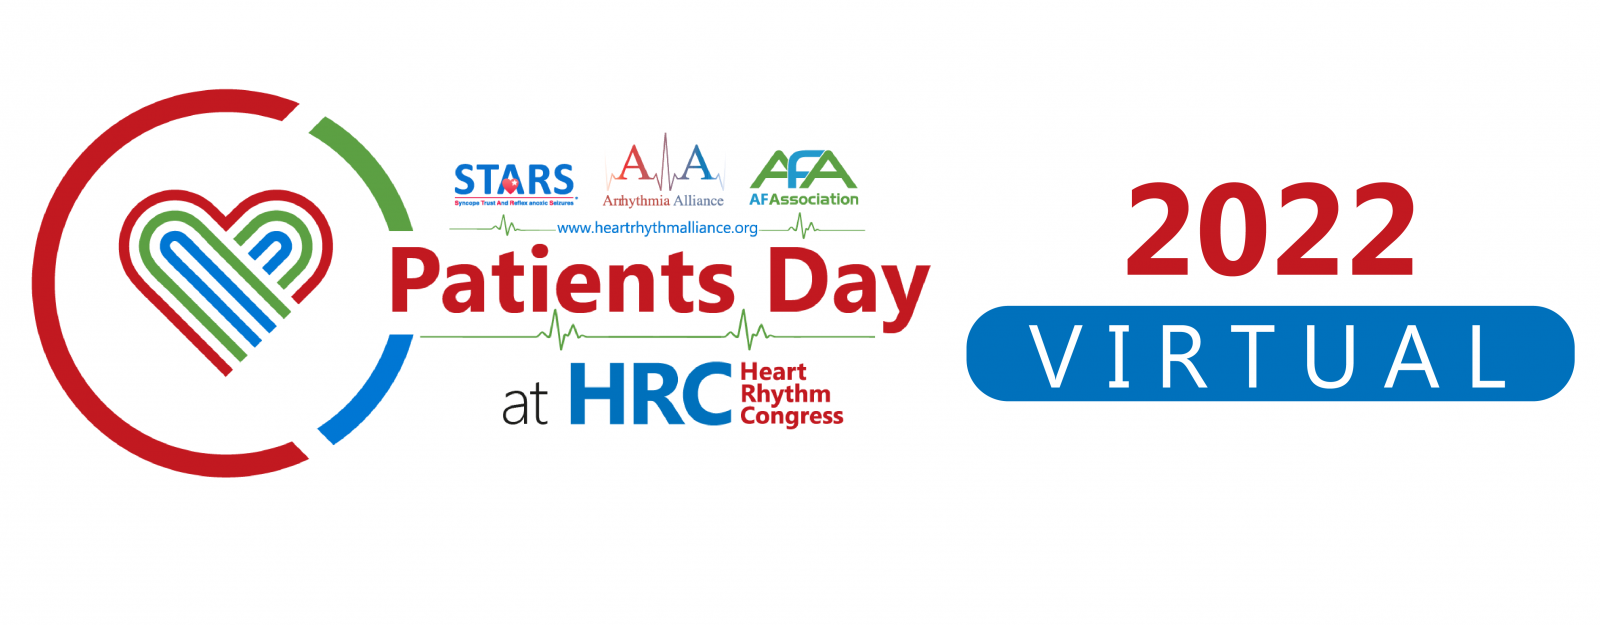 A-A Heart Rhythm Congress Patient Day 2022